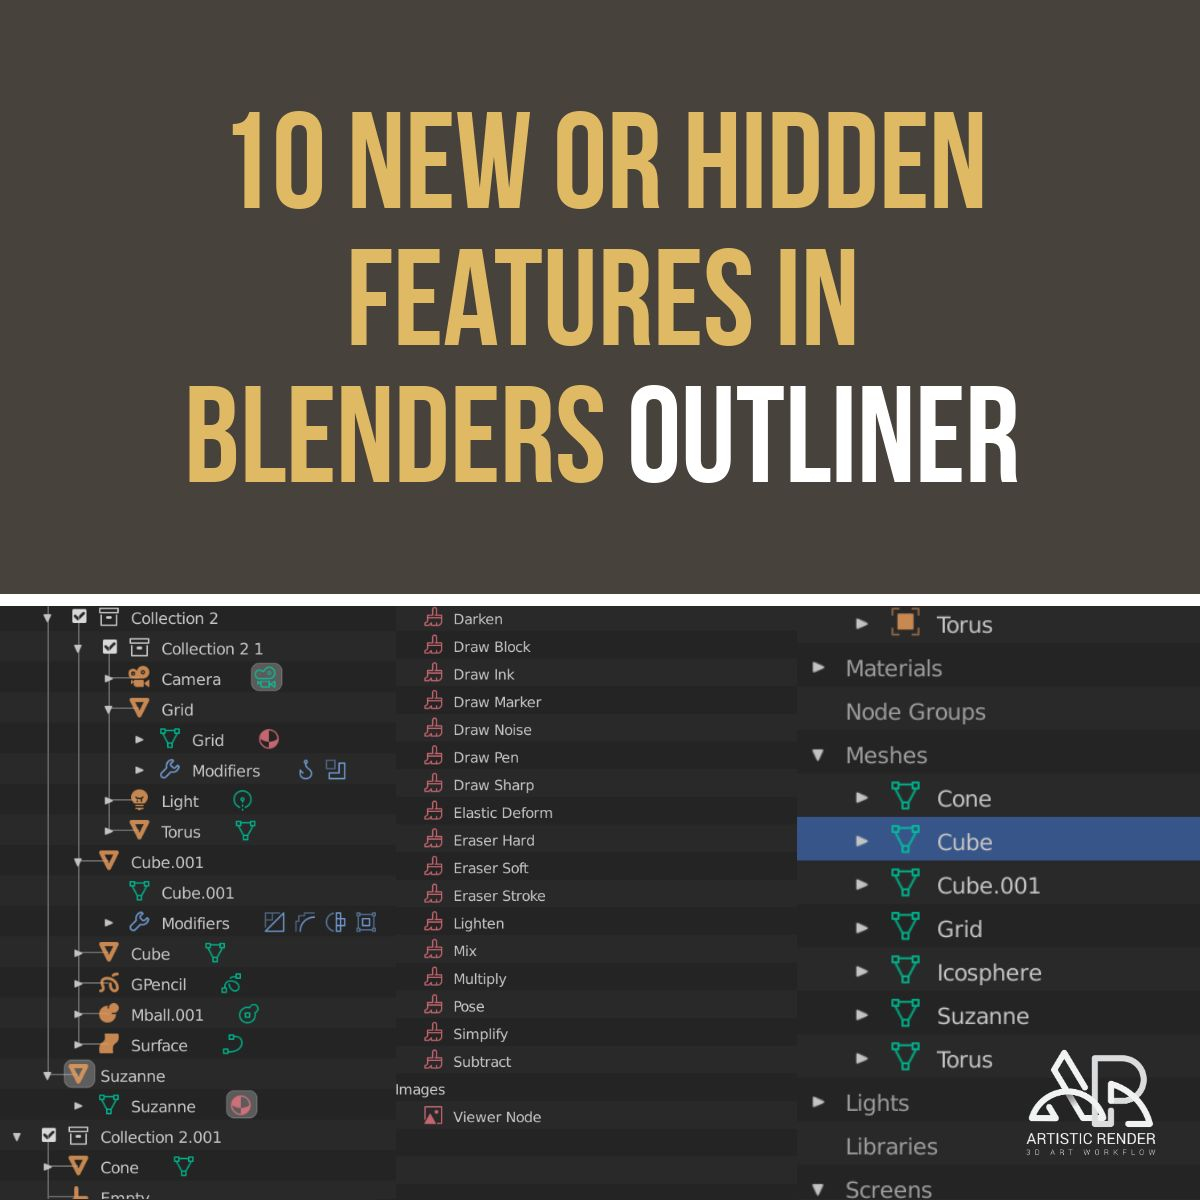 10 New Or Hidden Features In Blenders Outliner